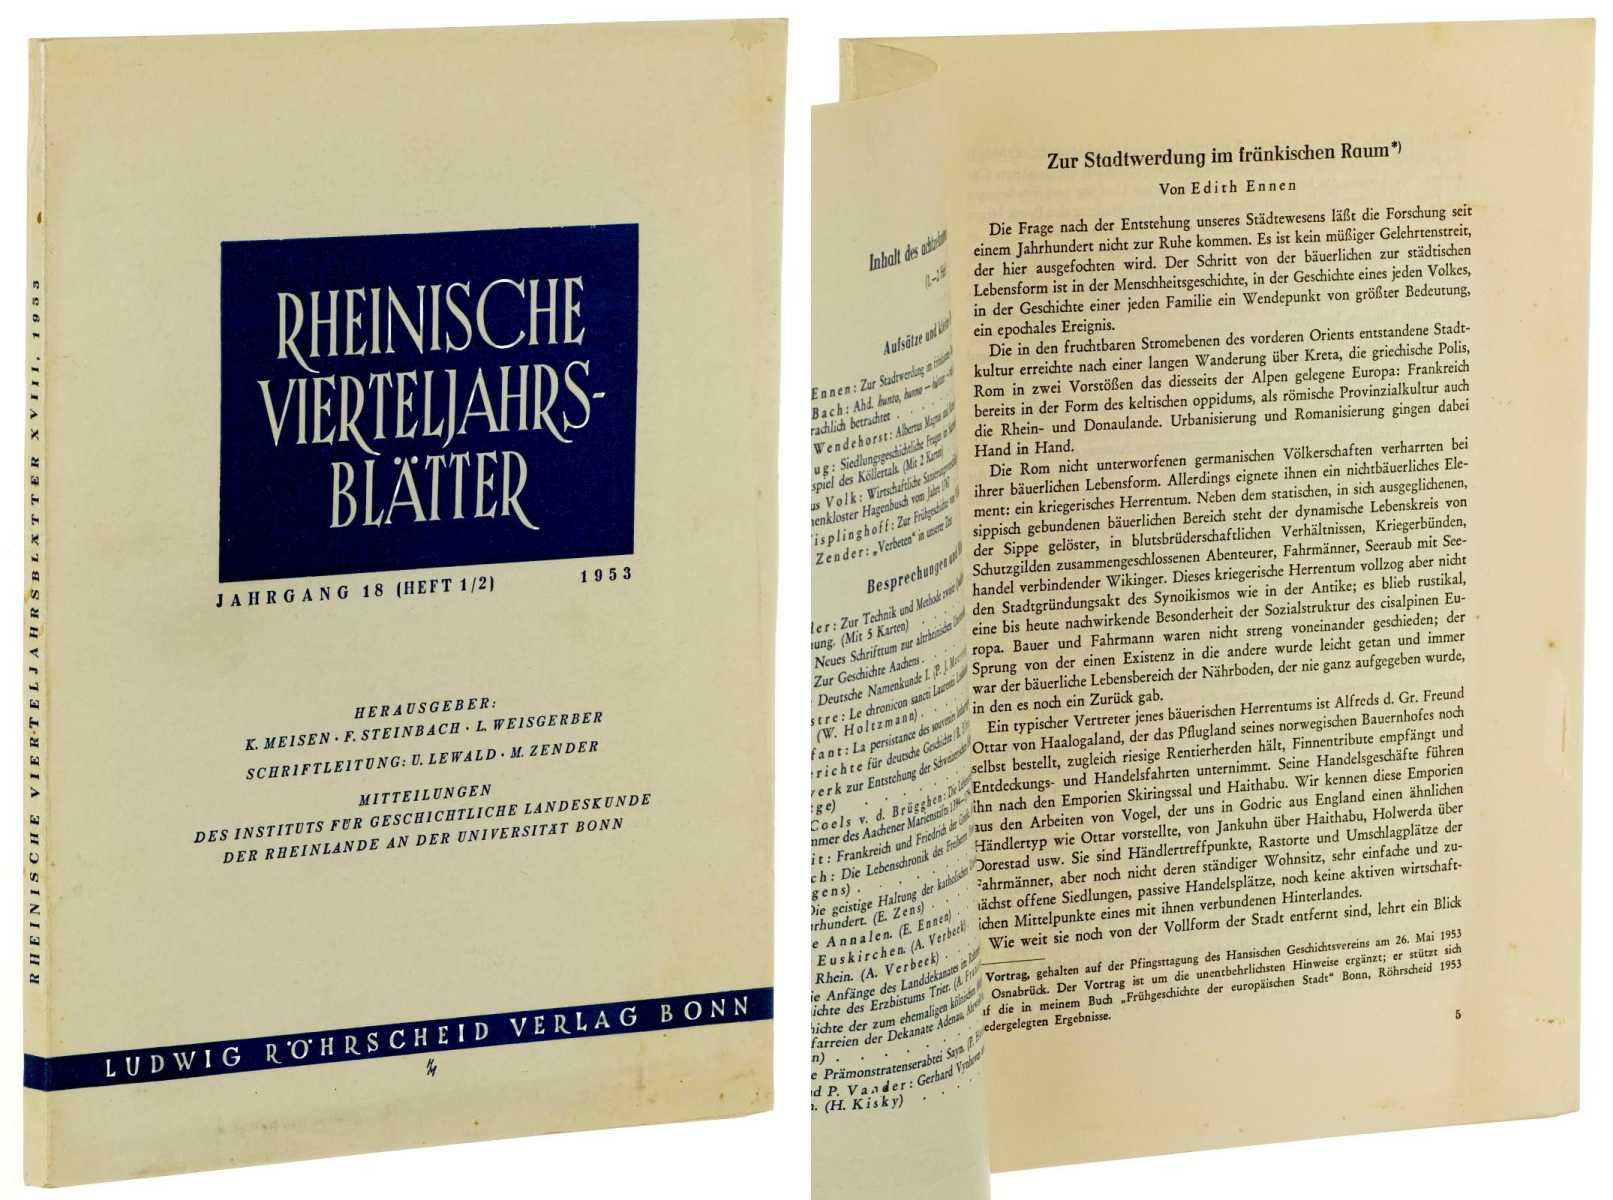   Rheinische Vierteljahrsblätter. Mitteilungen d. Inst. für geschichtl. Landeskunde d. Rheinlande a.d. Universität Bonn. 